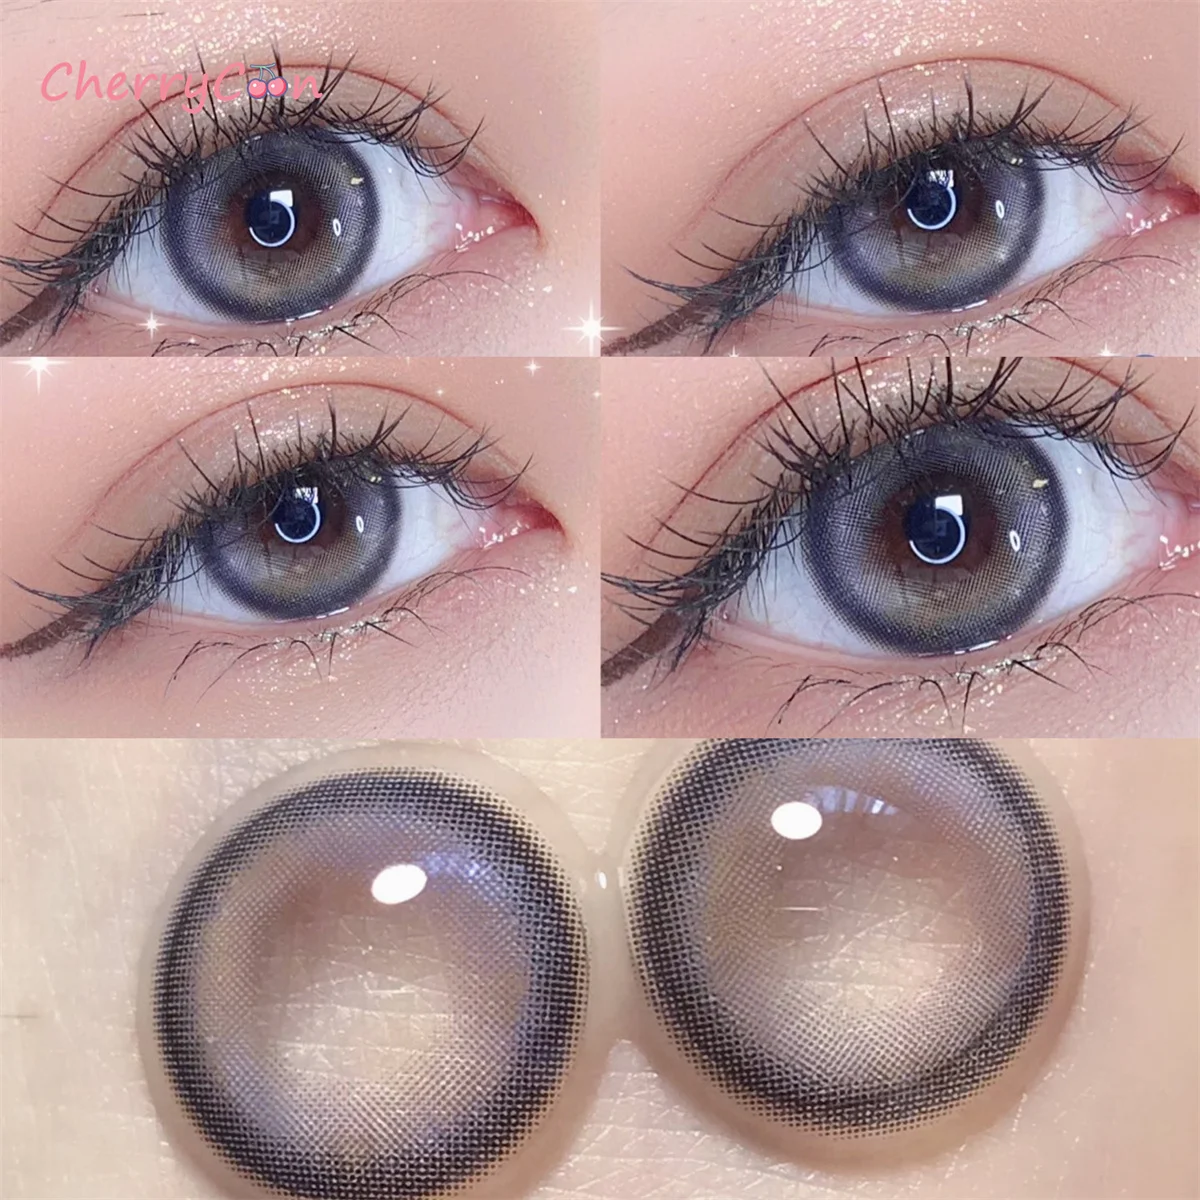 

CherryCon tear blue Новые популярные контактные линзы цветные мягкие для глаз большие красивые контактные линзы для зрачков при близорукости градусы 2 шт./пара